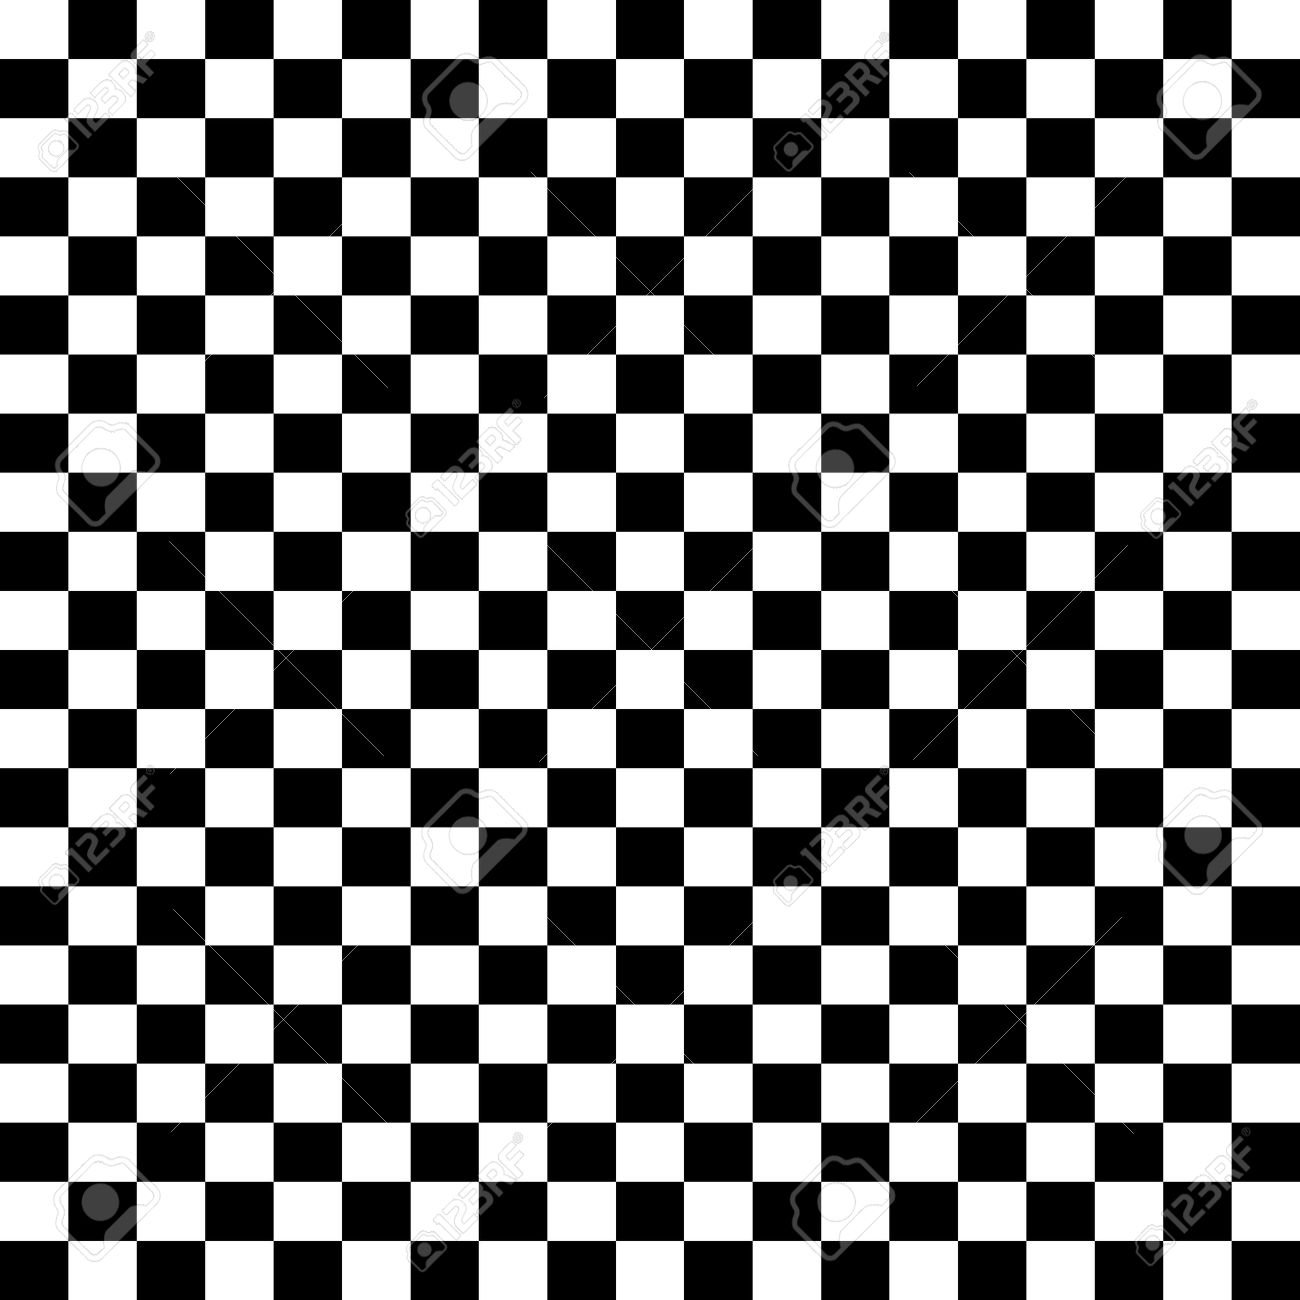 Белые чёрные квадратики в шахмотном порядке